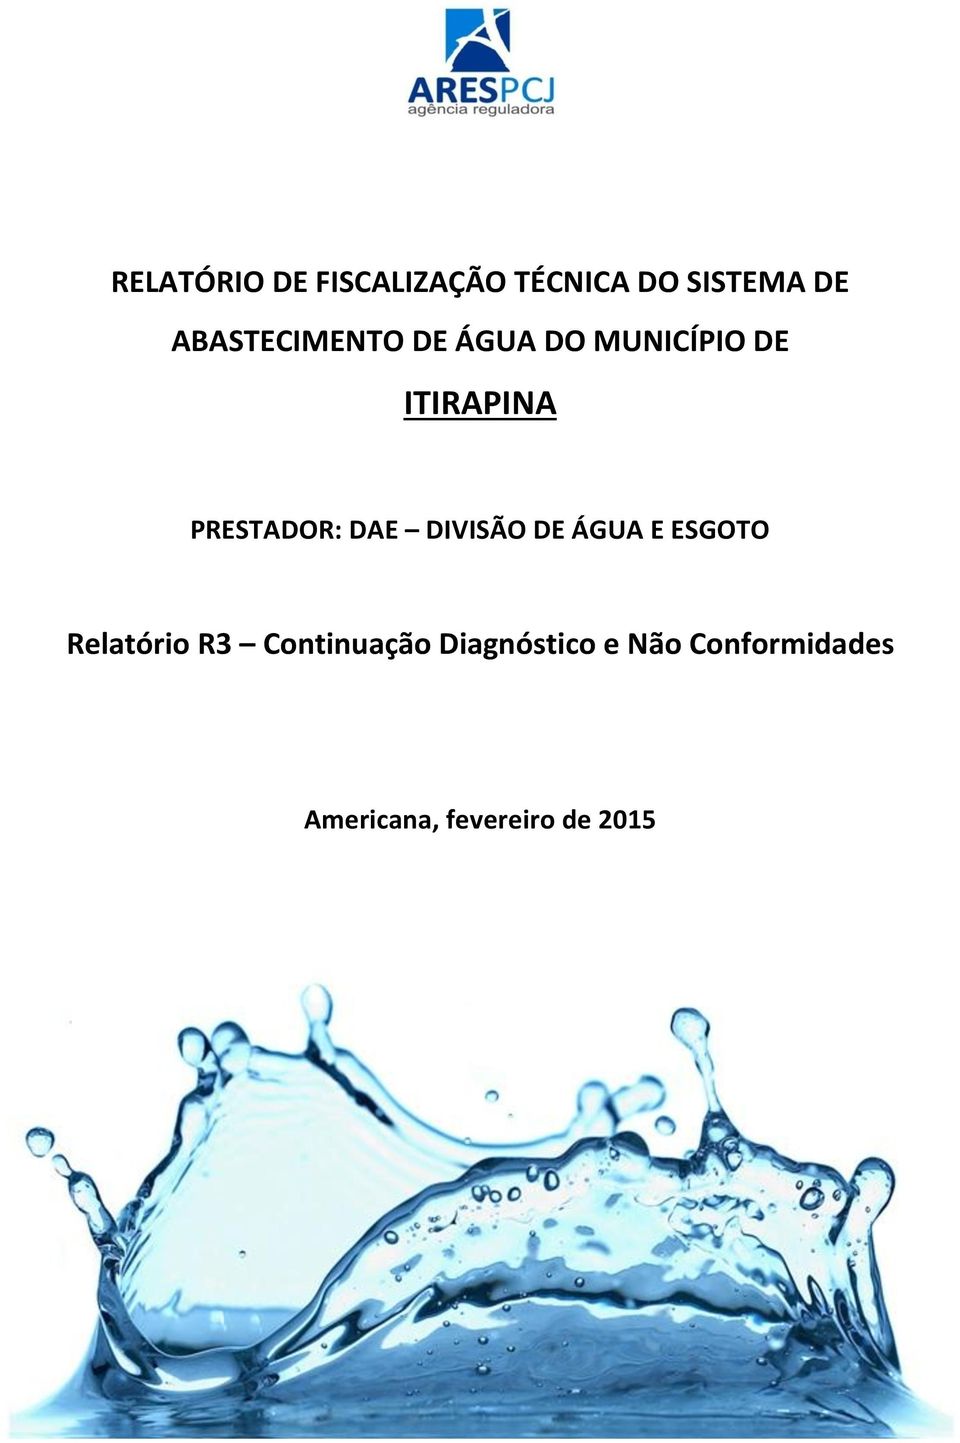 PRESTADOR: DAE DIVISÃO DE ÁGUA E ESGOTO Relatório R3